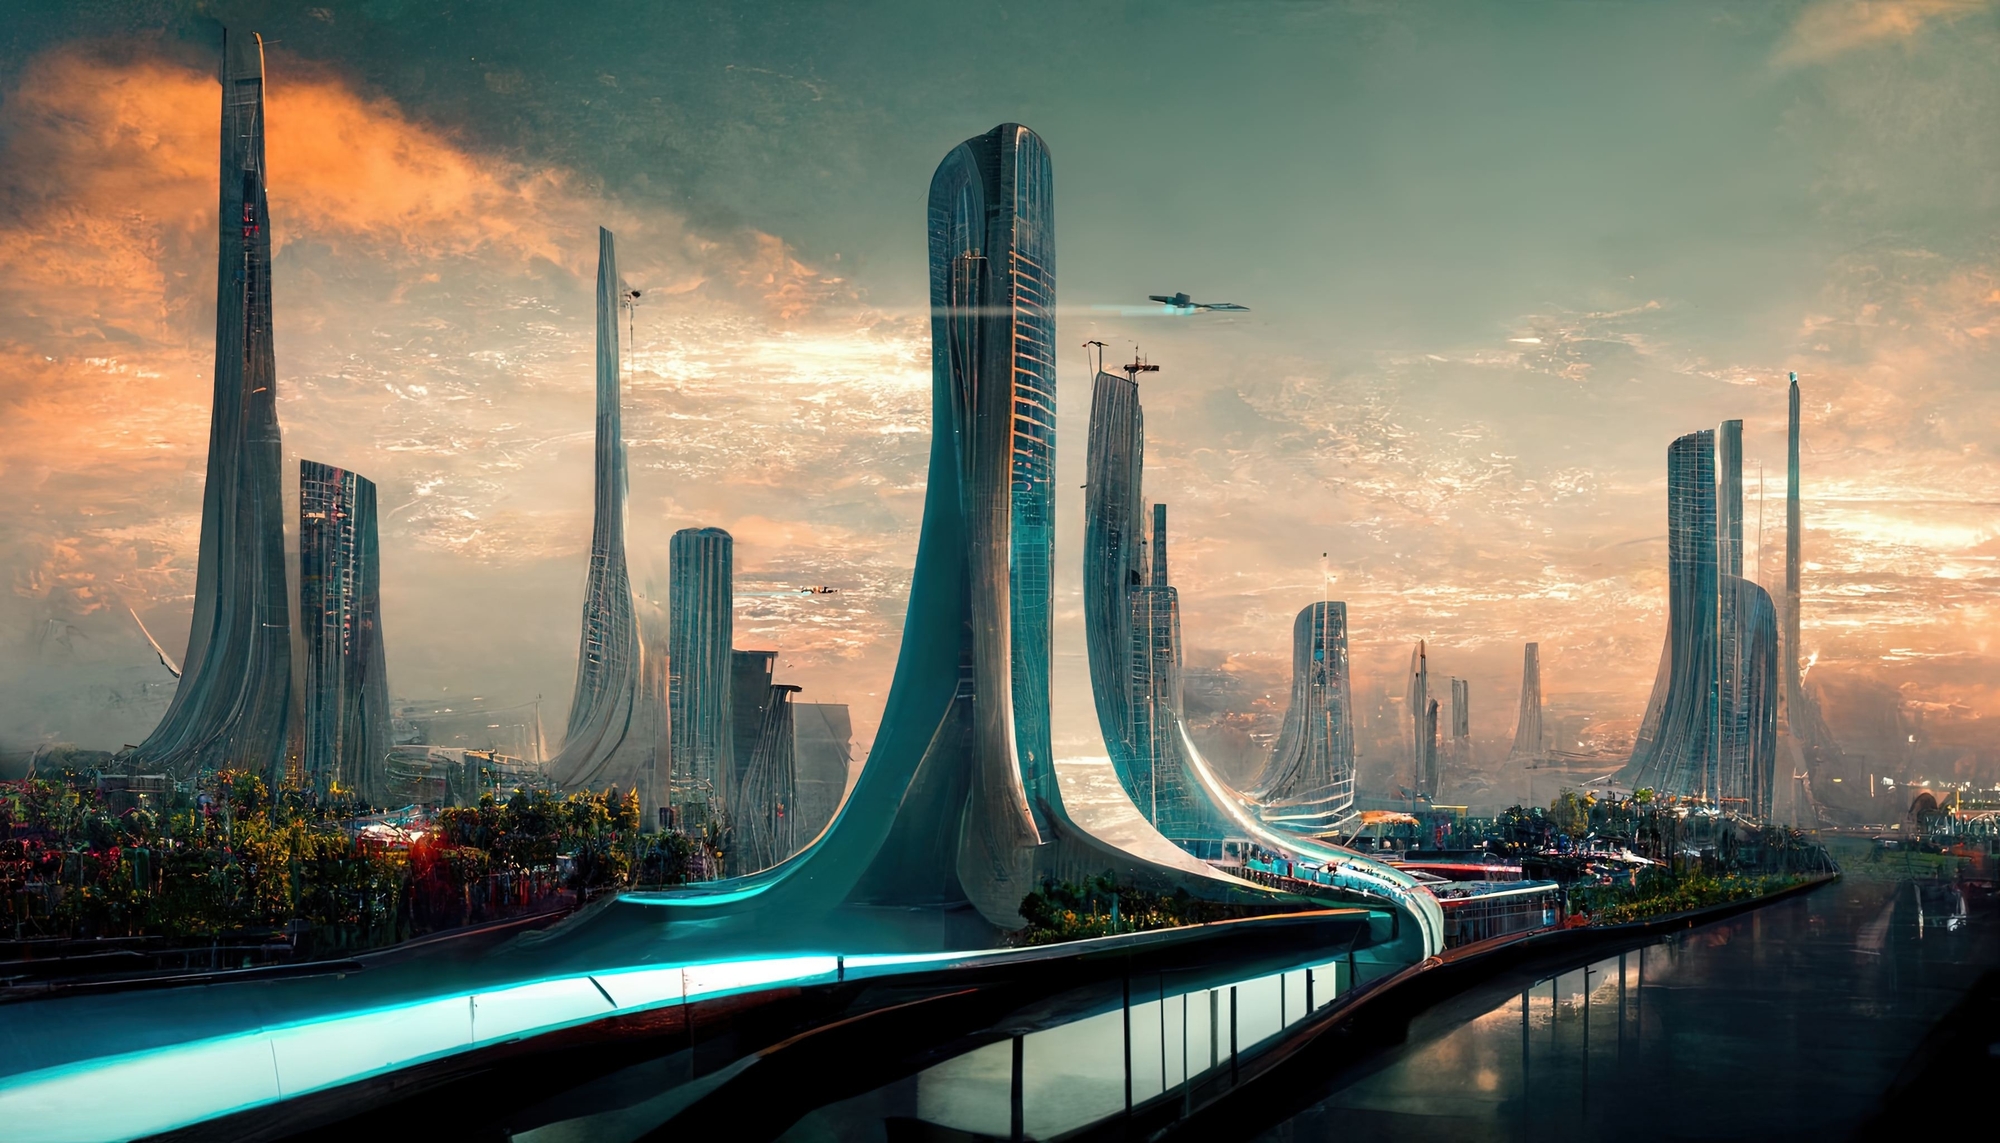 Un milliardaire russe cherche à faire reconnaître Asgardia, sa nouvelle nation de l'espace, à l'ONU